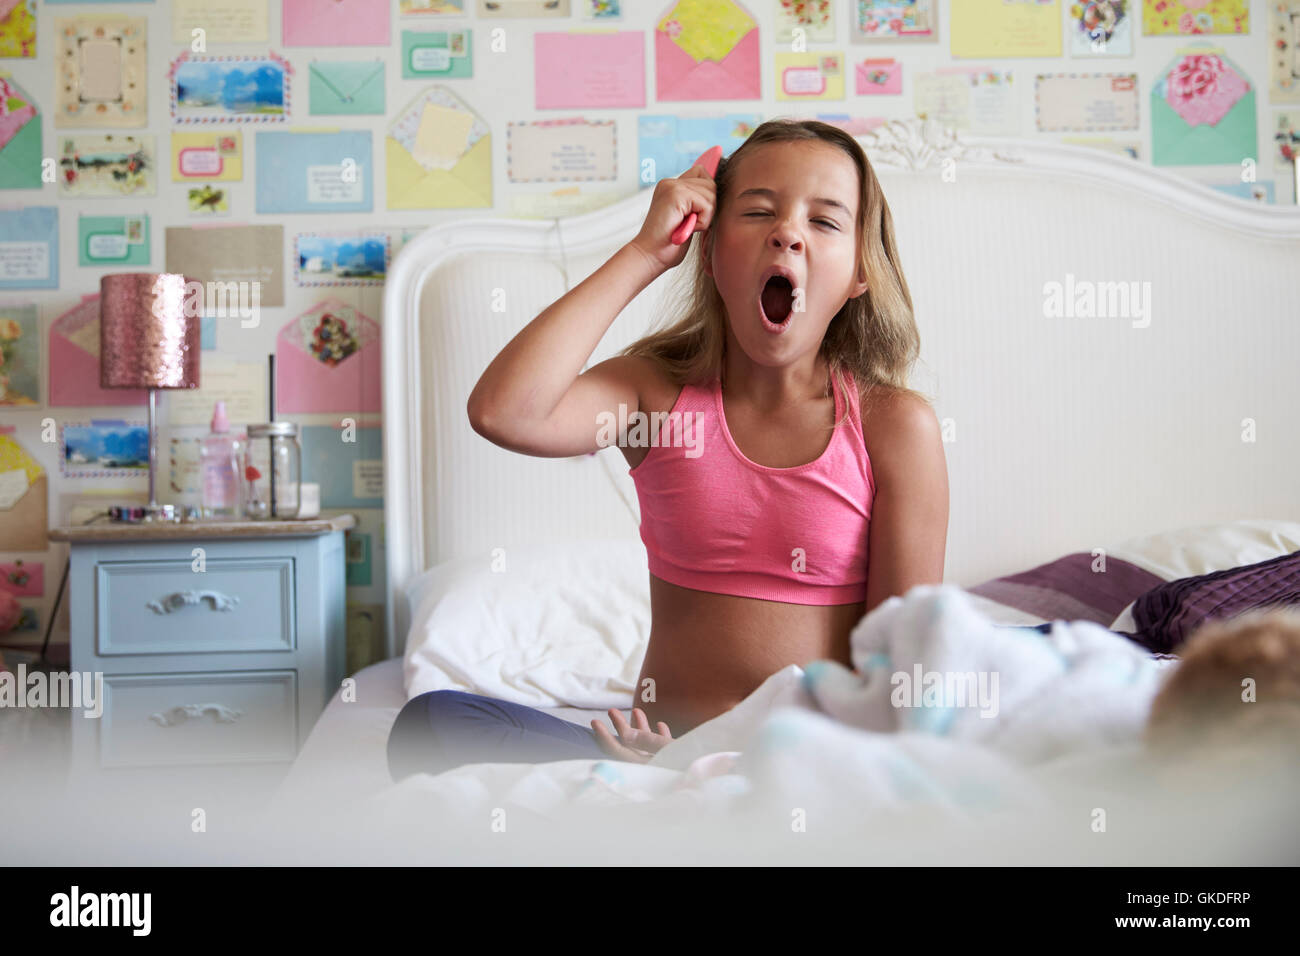 Giovane ragazza seduta sul letto e spazzolare i capelli mentre sbadigli Foto Stock